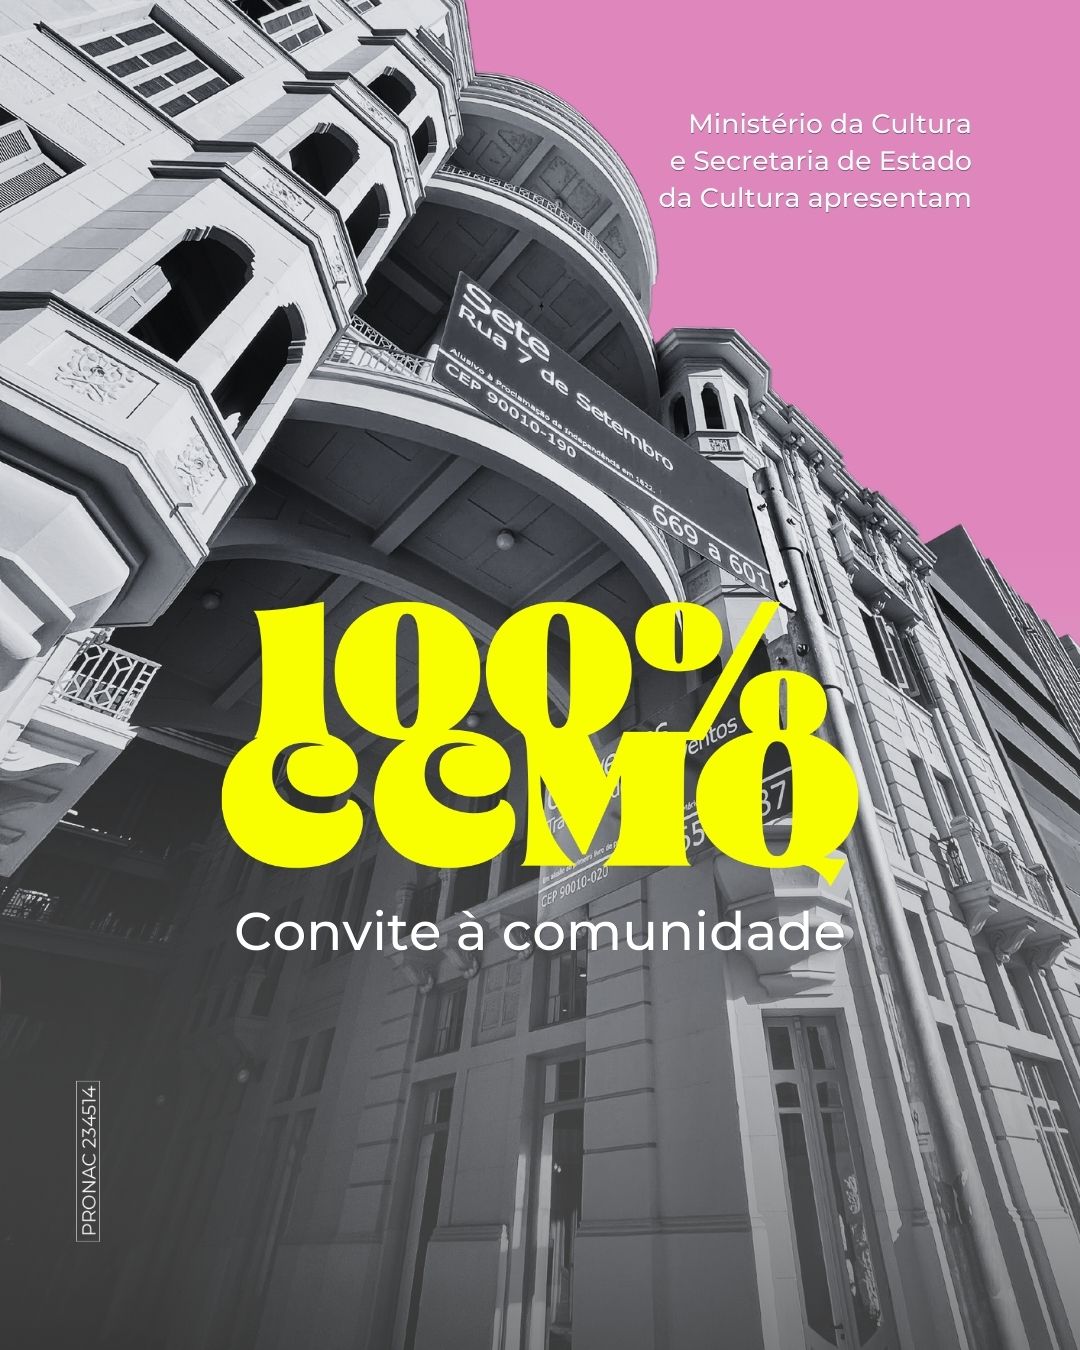 Casa de Cultura Maria Quintana lança chamada “100% CCMQ”